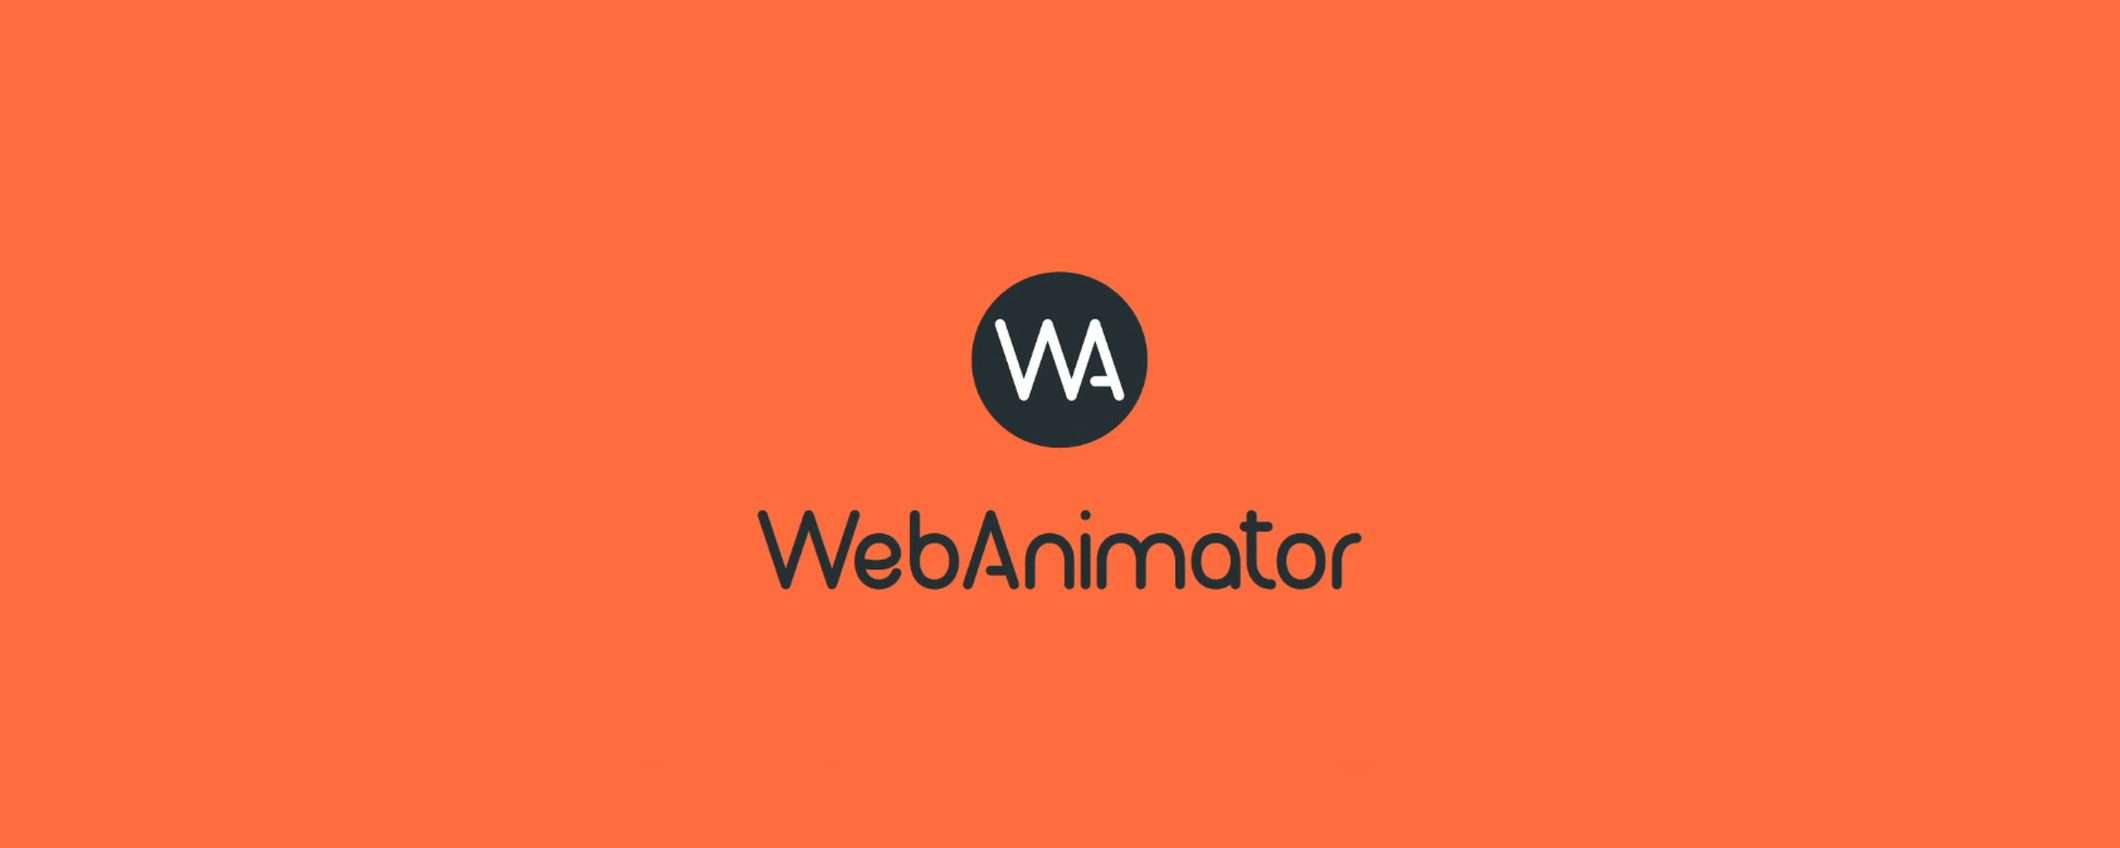 WebAnimator now 3 in offerta con sconto del 40%